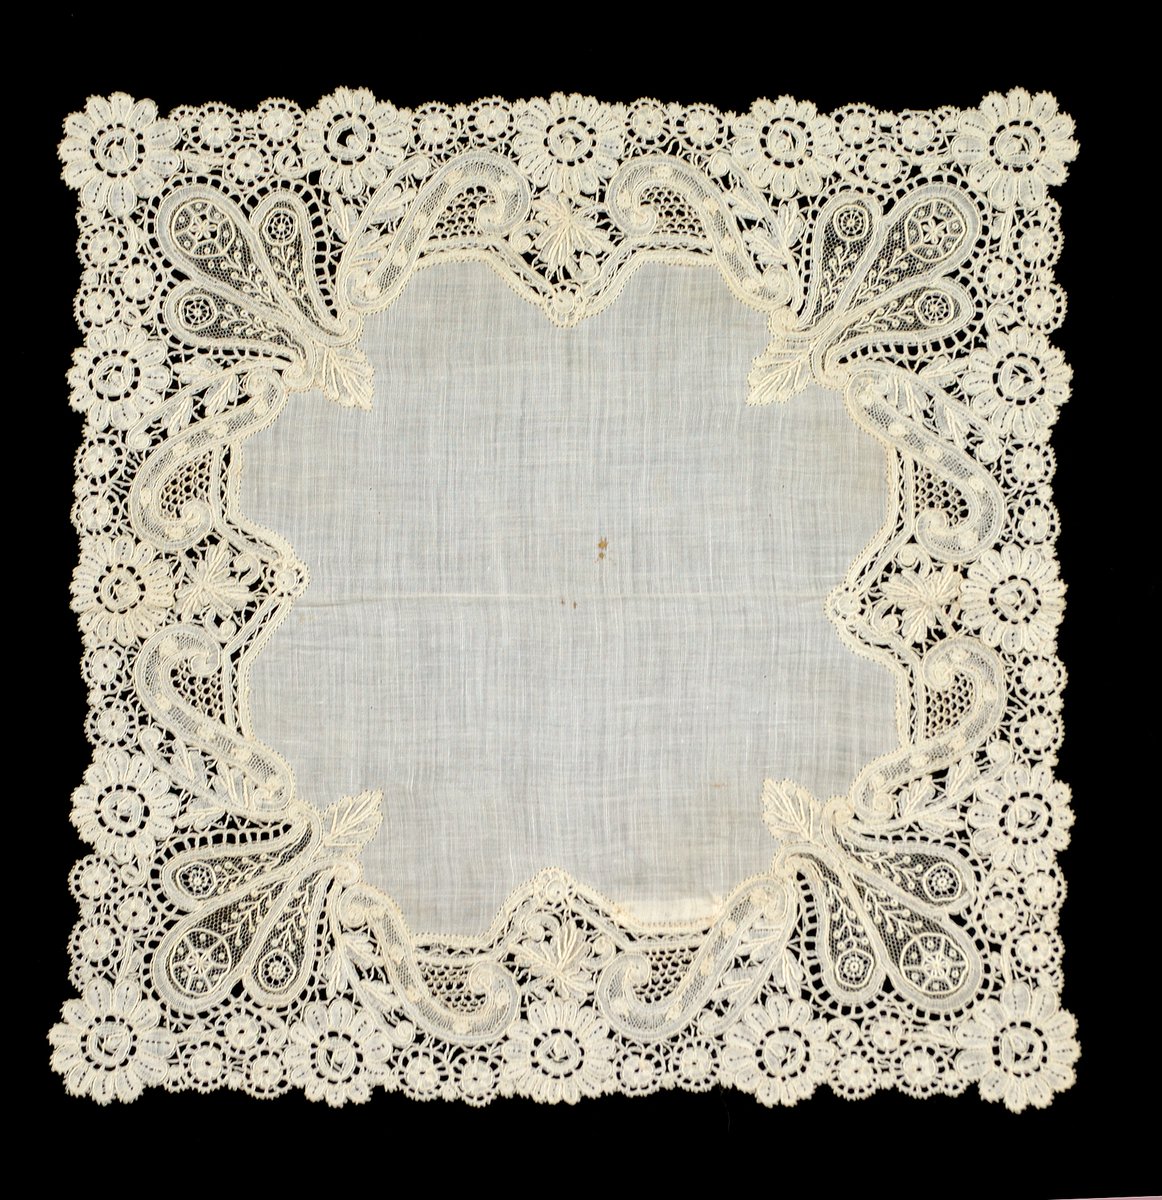 Handkerchief, 1850-75. Belgium. The MET.